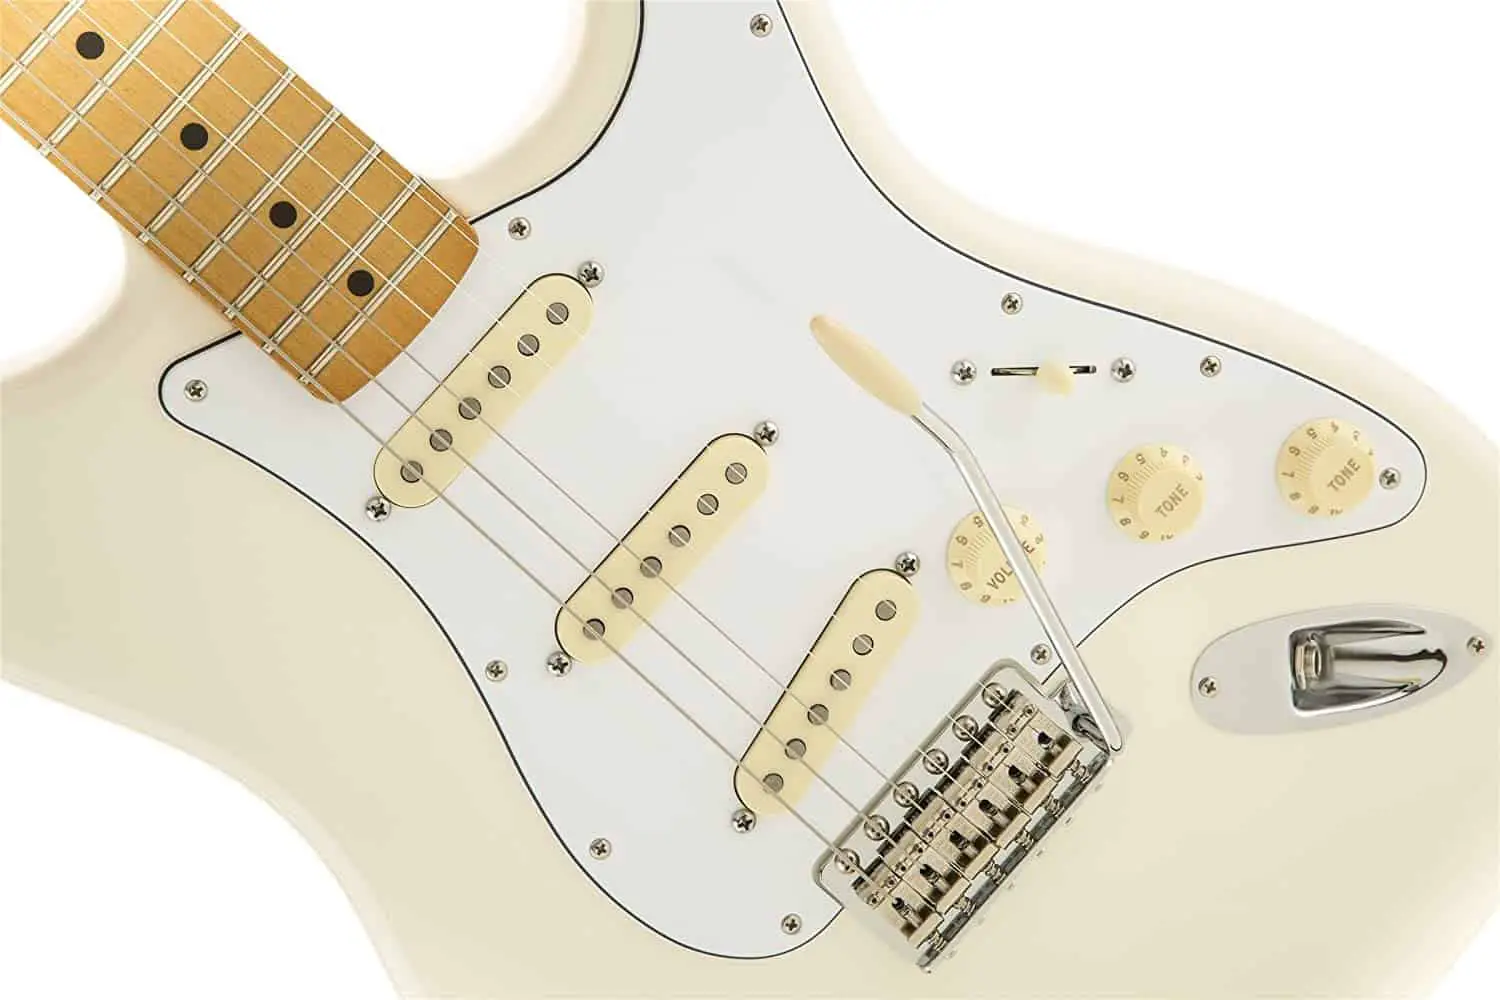 Best stratocaster for rock- Fender Jimi Hendrix Olympic White